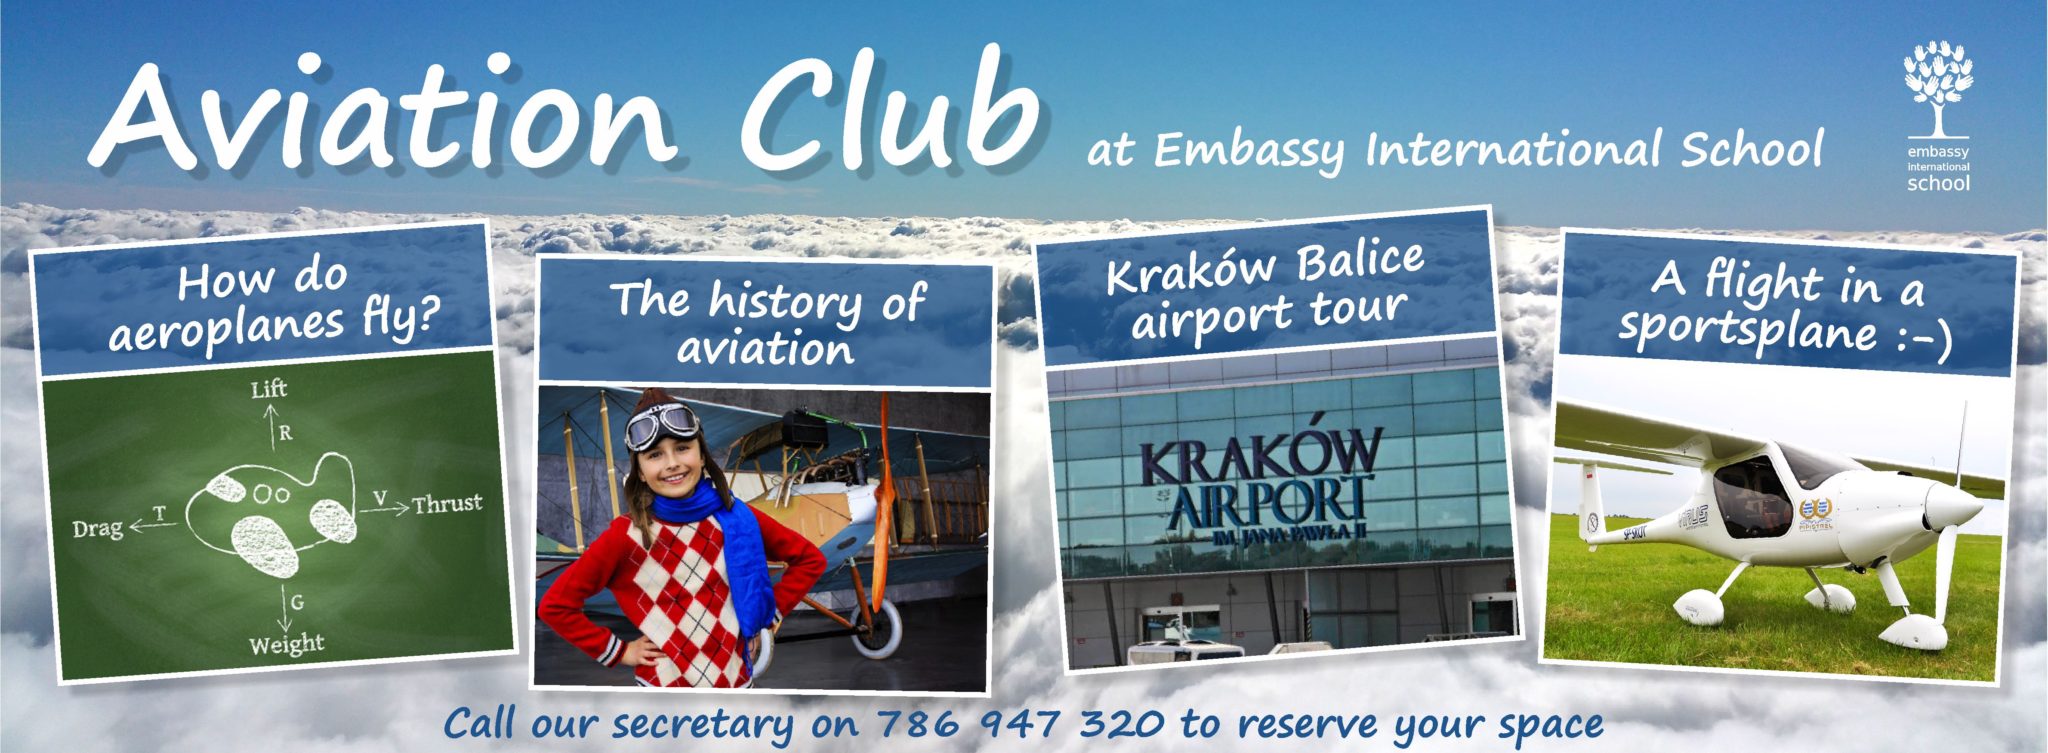 Embassy School Aviation Club